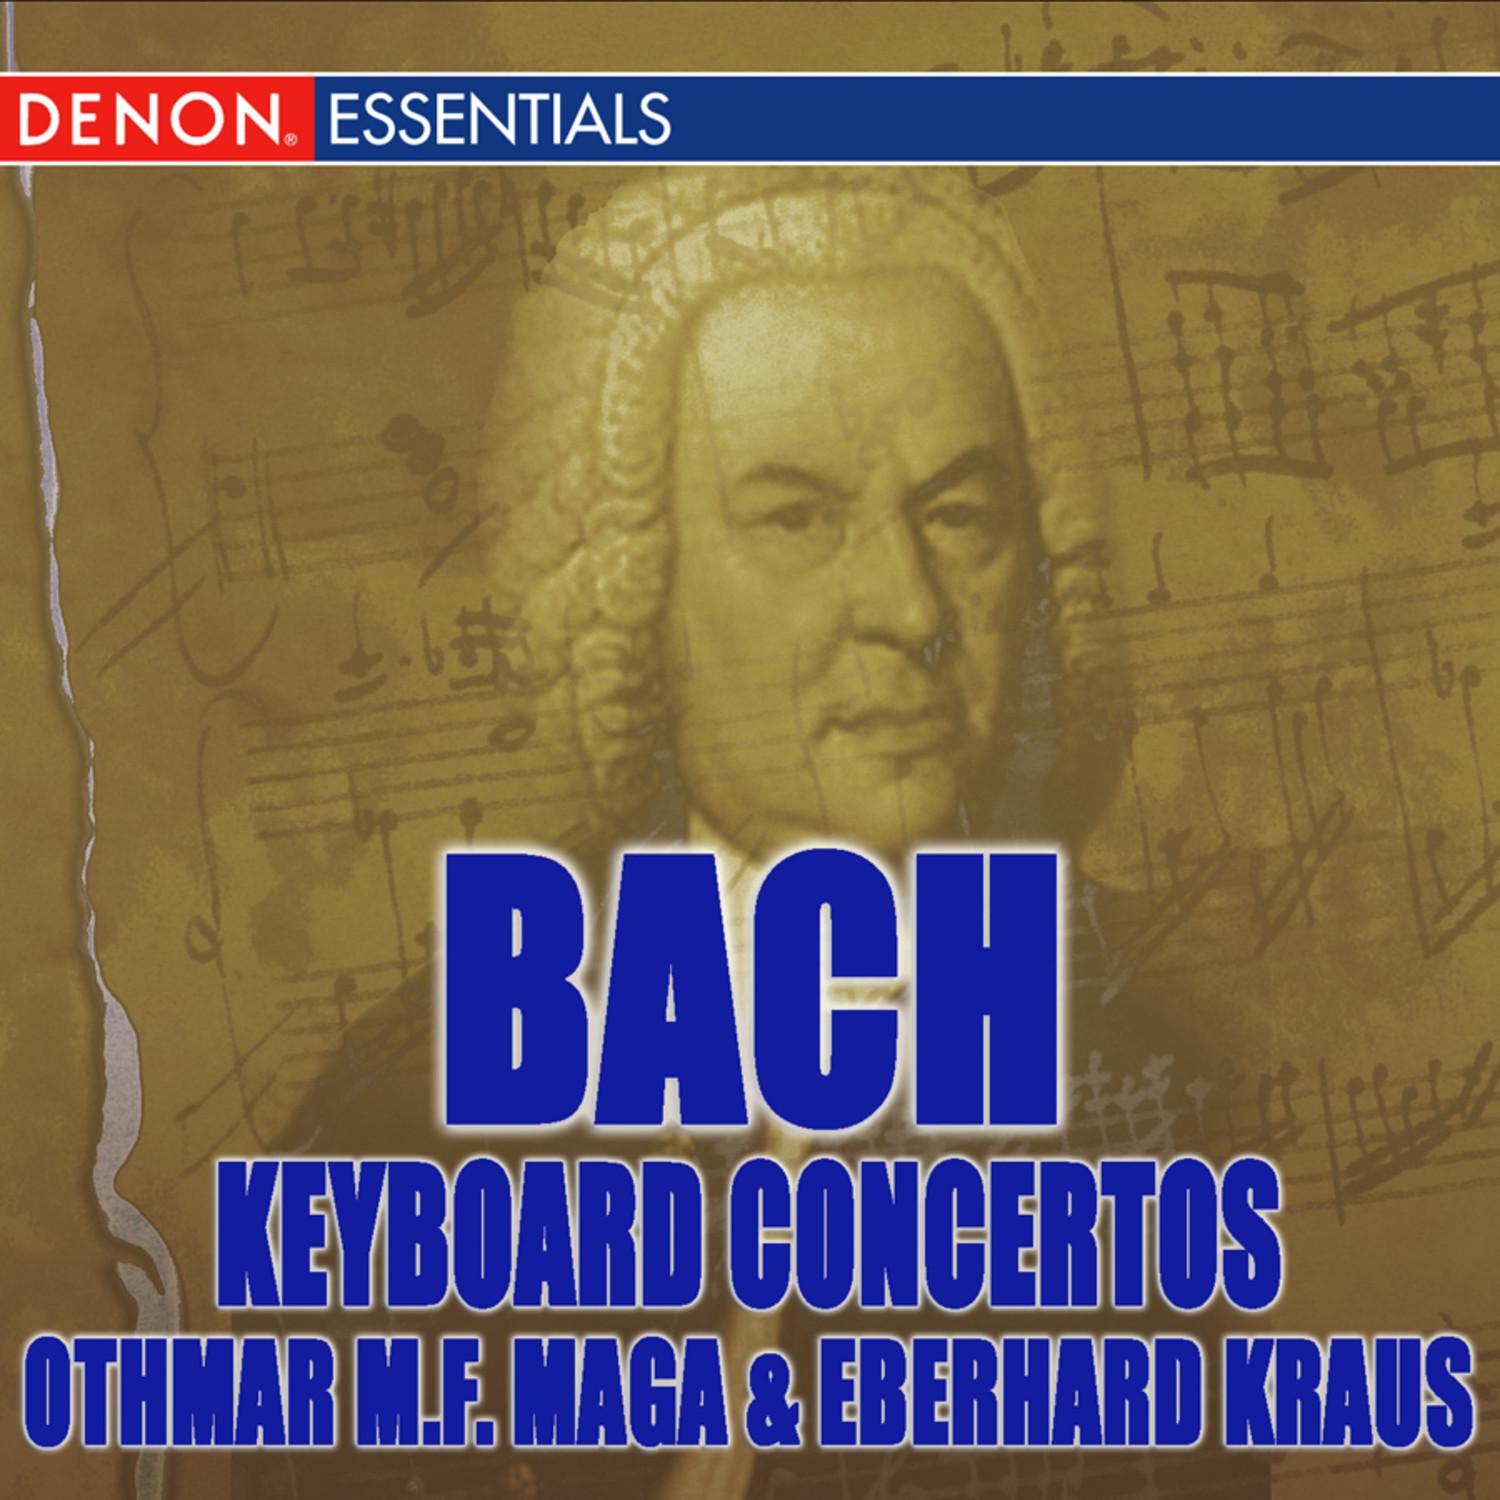 Concerto III for Piano in D Major, BWV 1054: II. Adagio e Piano Sempre